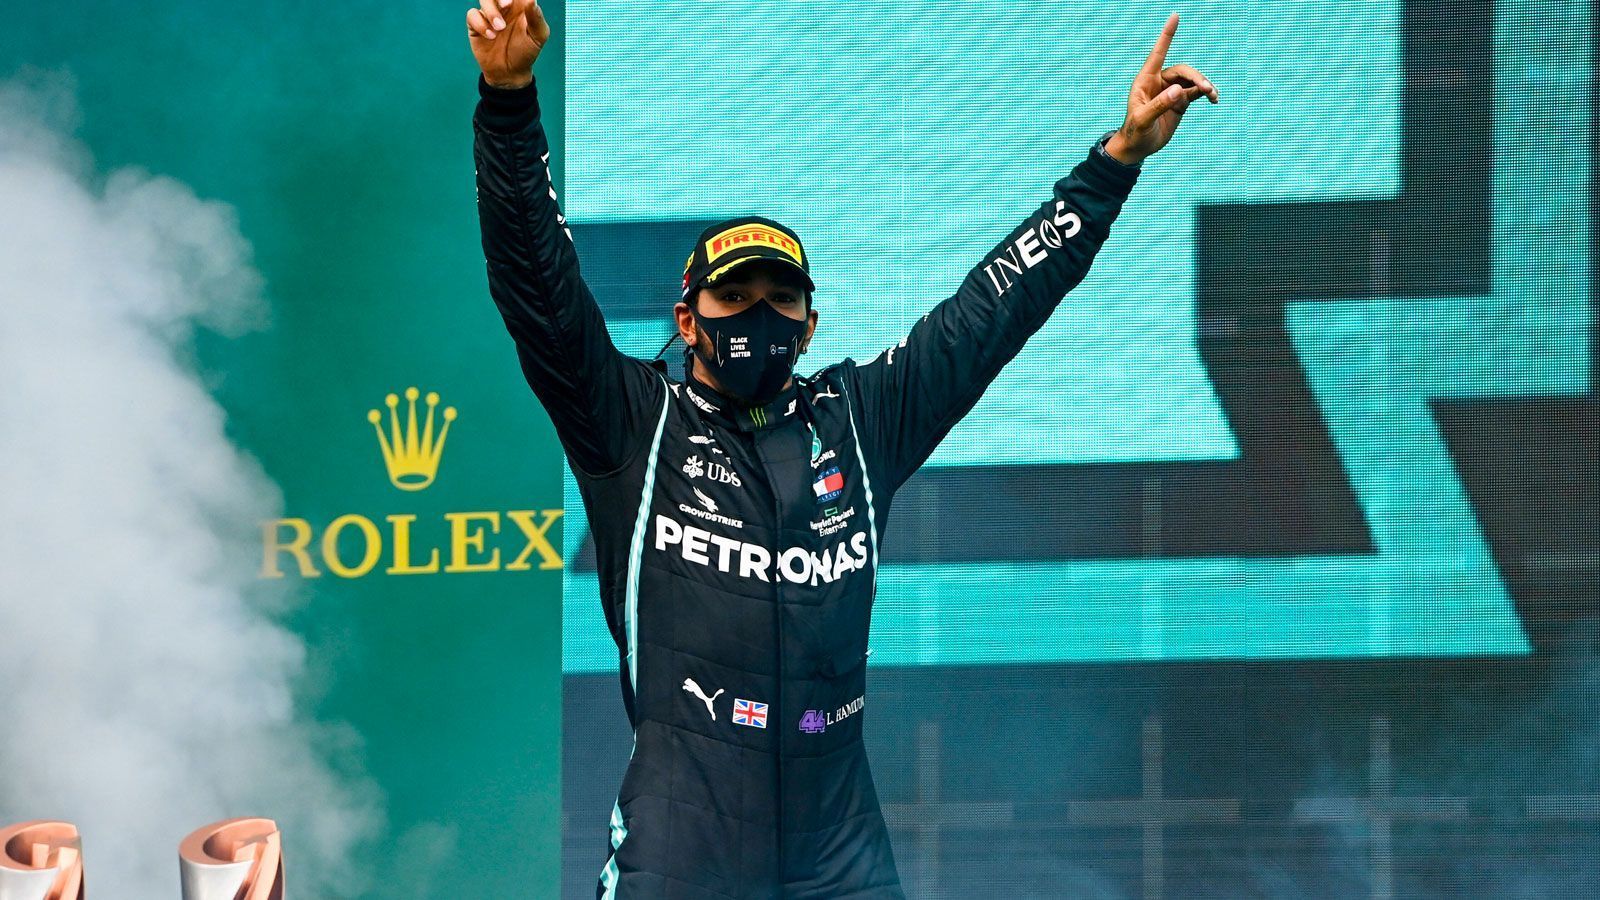 
                <strong>Anzahl der Podestplätze</strong><br>
                Lewis Hamilton: 163 (Platz 1) - Michael Schumacher: 155 (Platz 2)
              